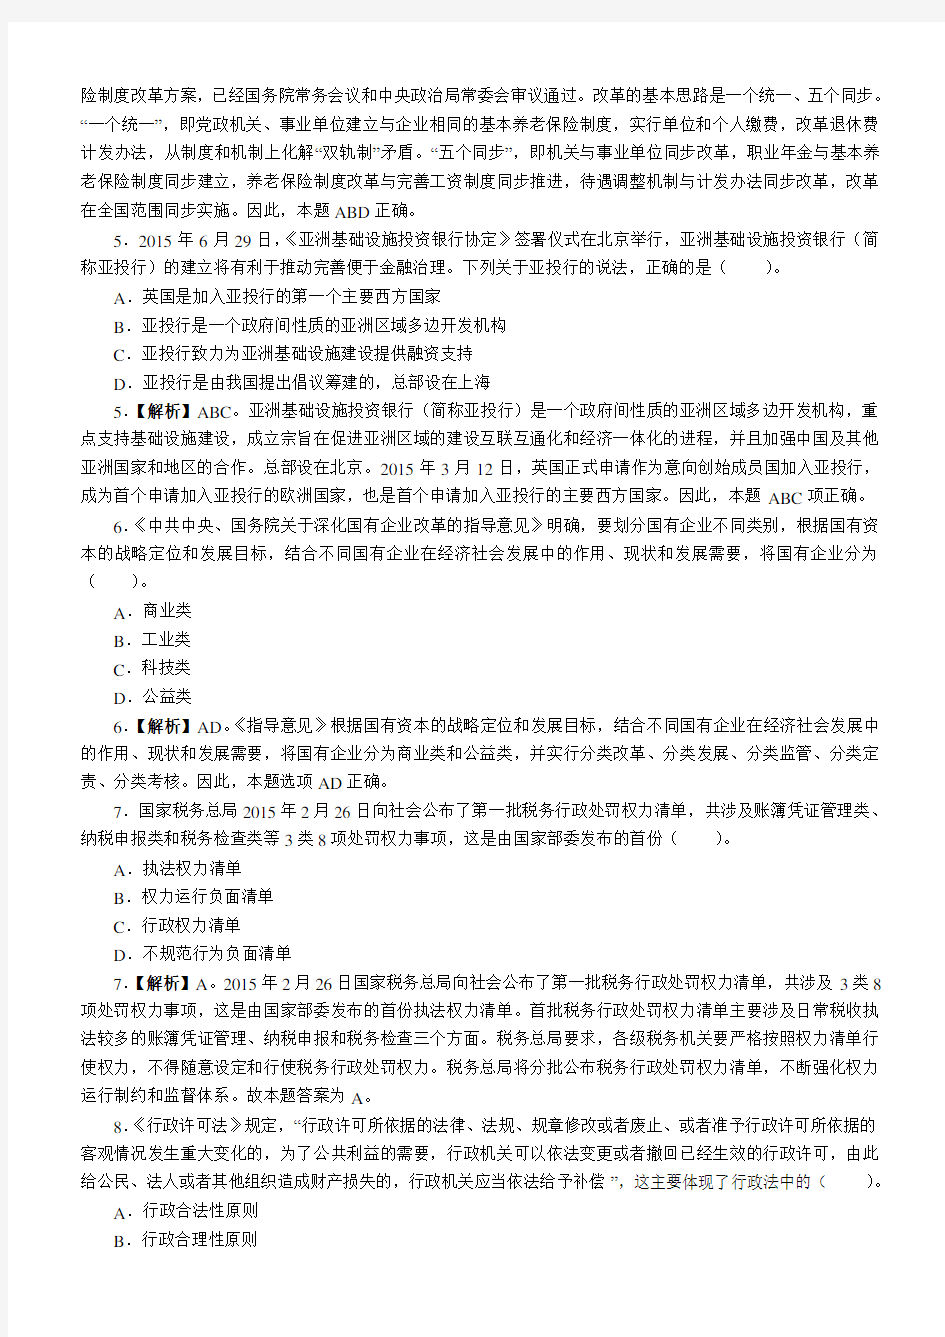 2016年上海公务员考试行测真题及答案解析(A卷)